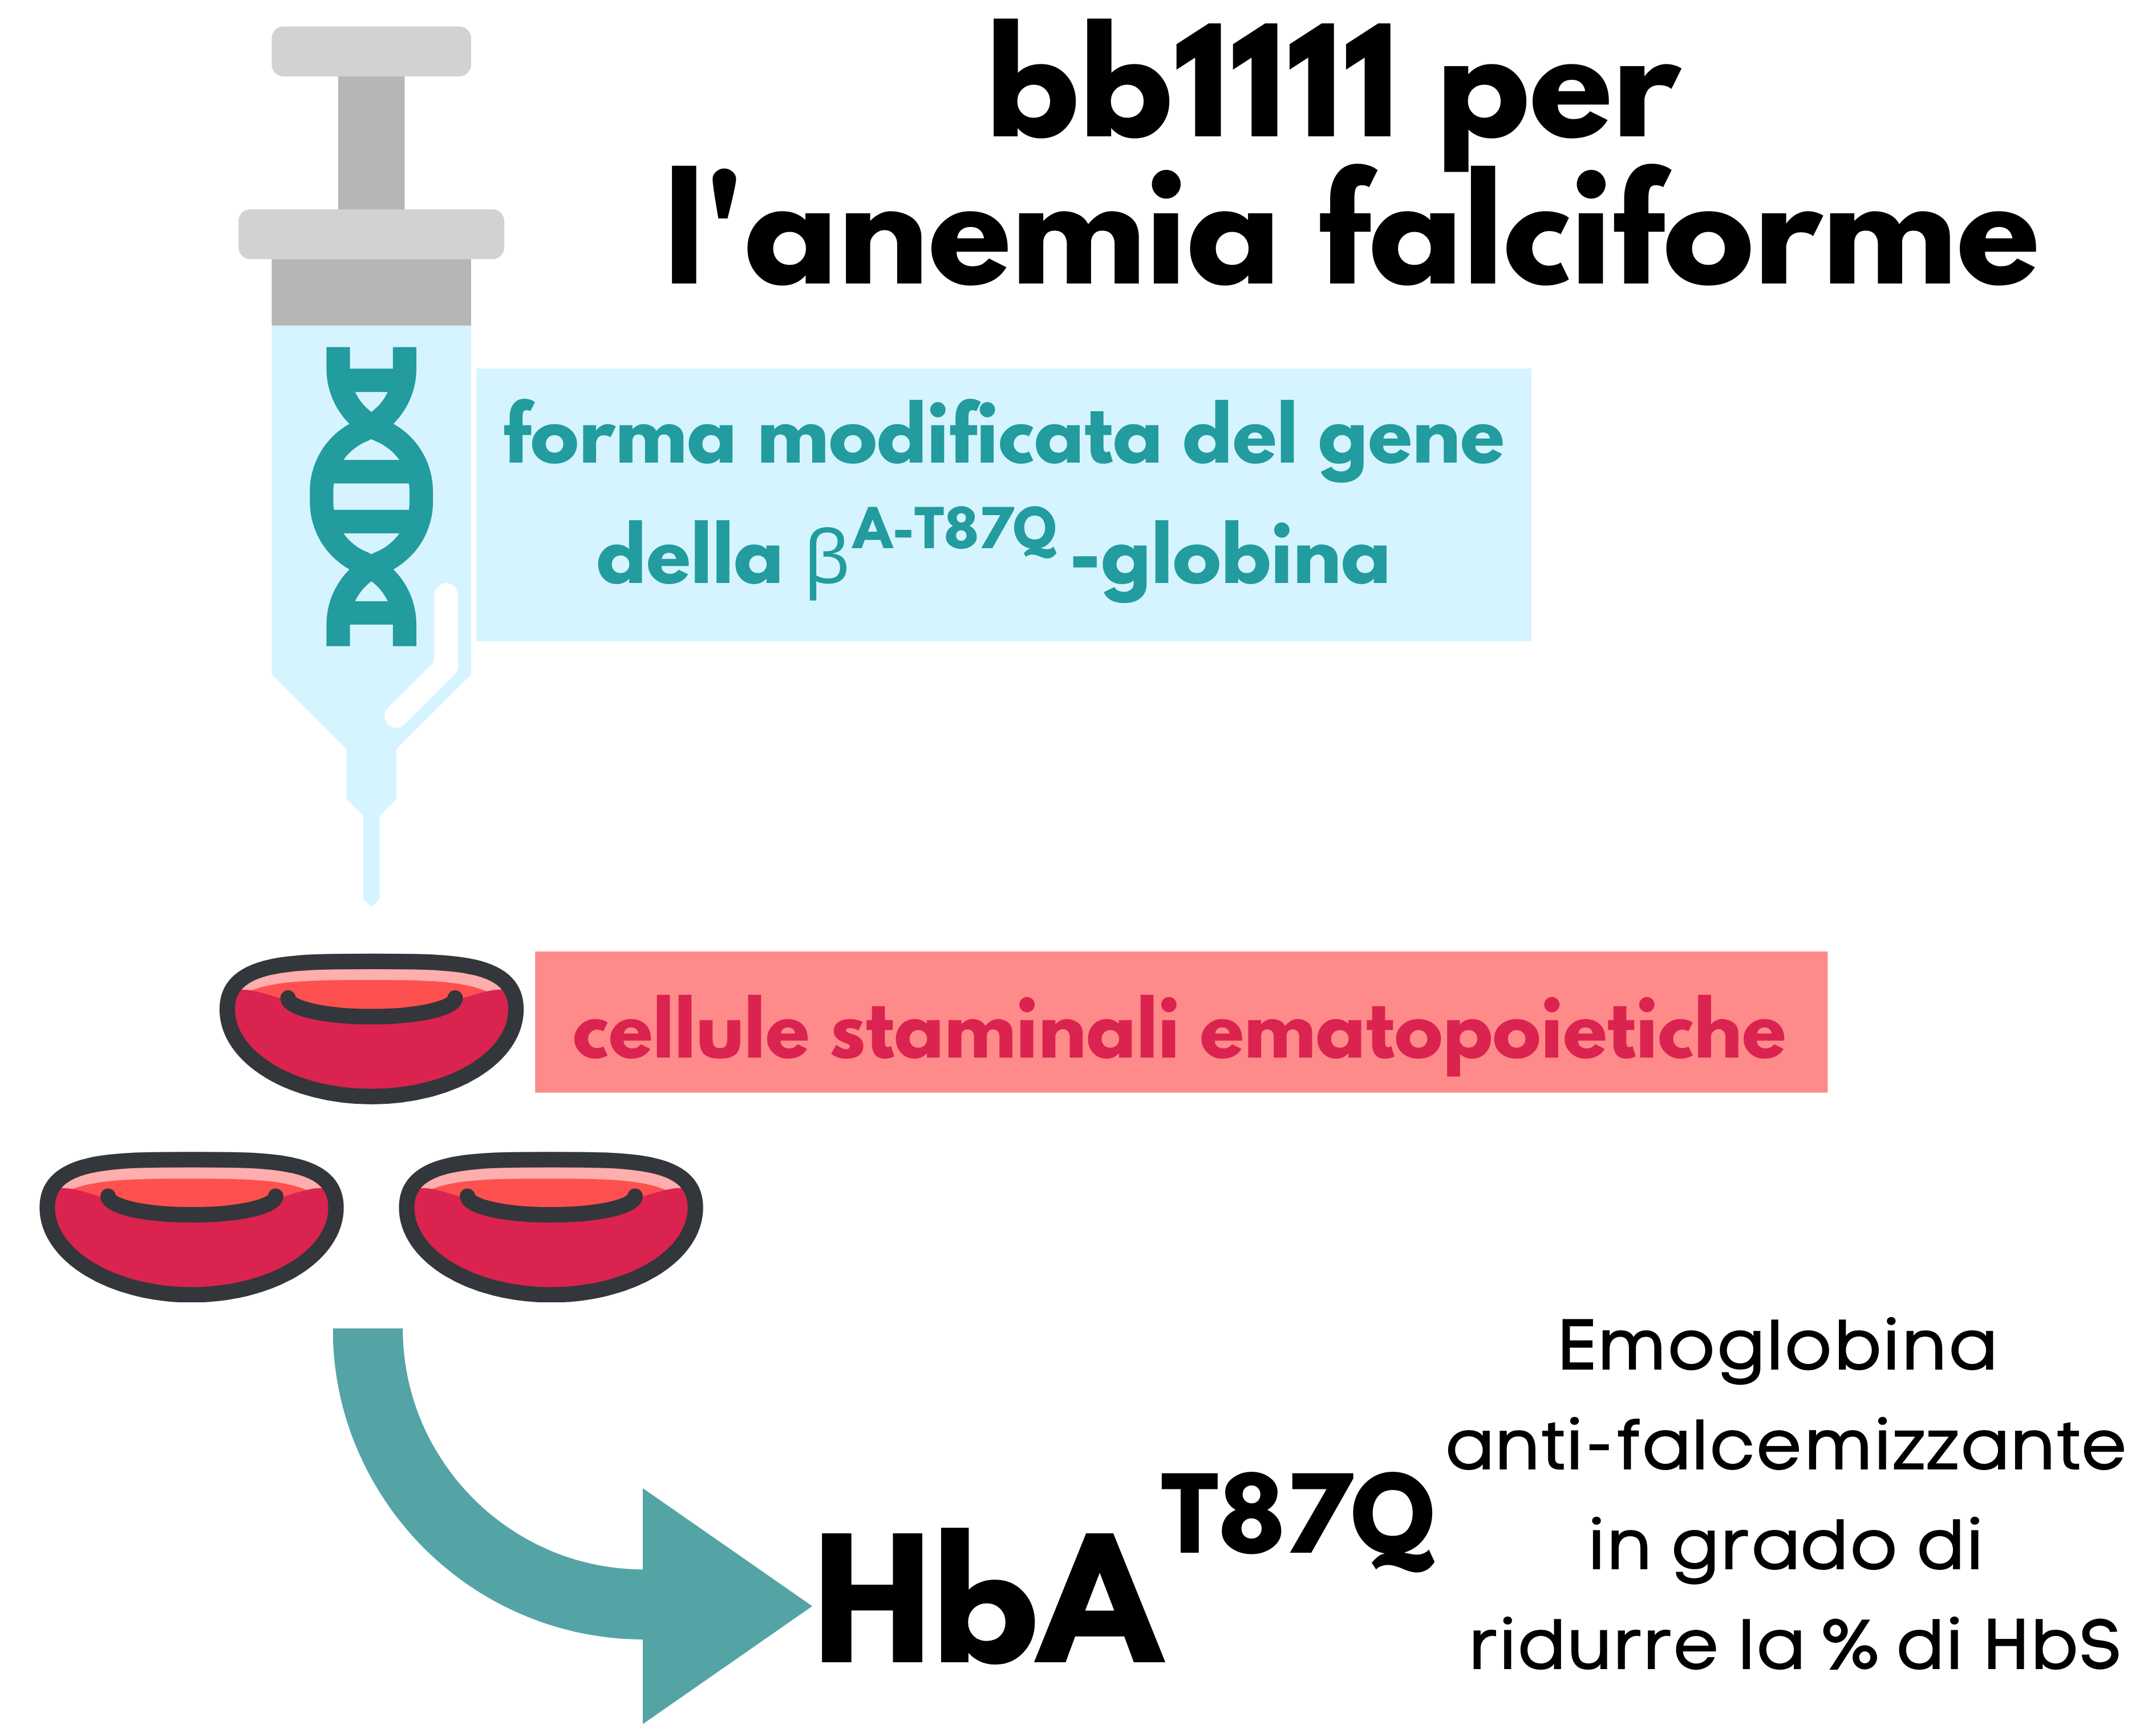 bb1111 per l'anemia falciforme permette la totale eliminazione degli eventi vaso-occlusivi severi 